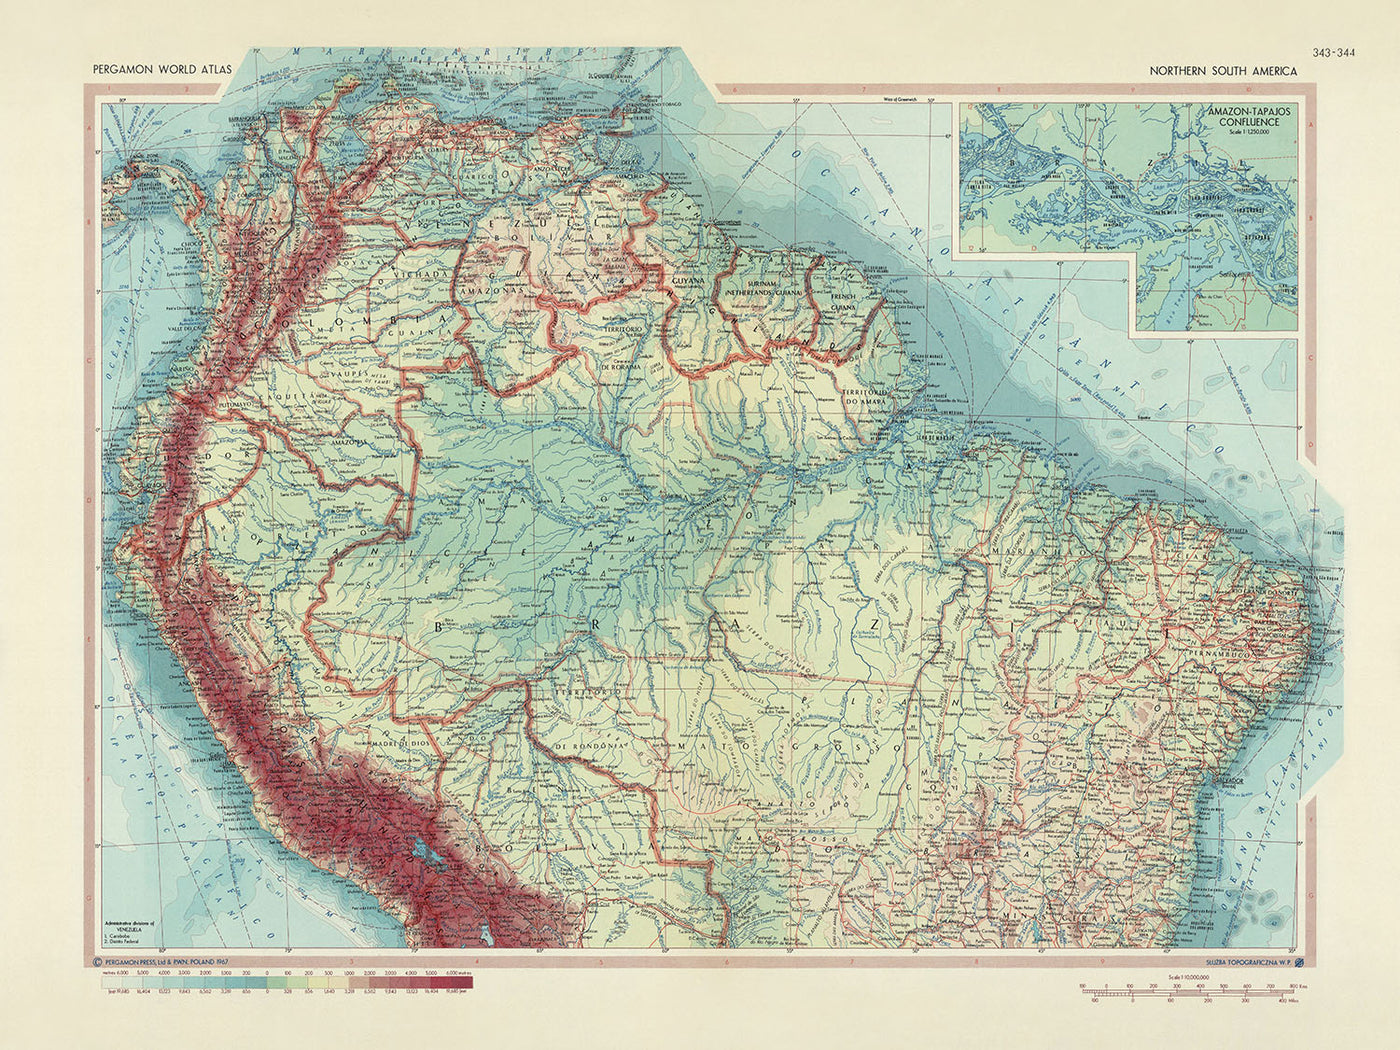 Ancienne carte du nord de l'Amérique du Sud, Service topographique de l'armée polonaise, 1967 : fleuve et bassin Amazone, cordillère des Andes, canal de Panama, confluent Amazone-Tapajos, Petites Antilles